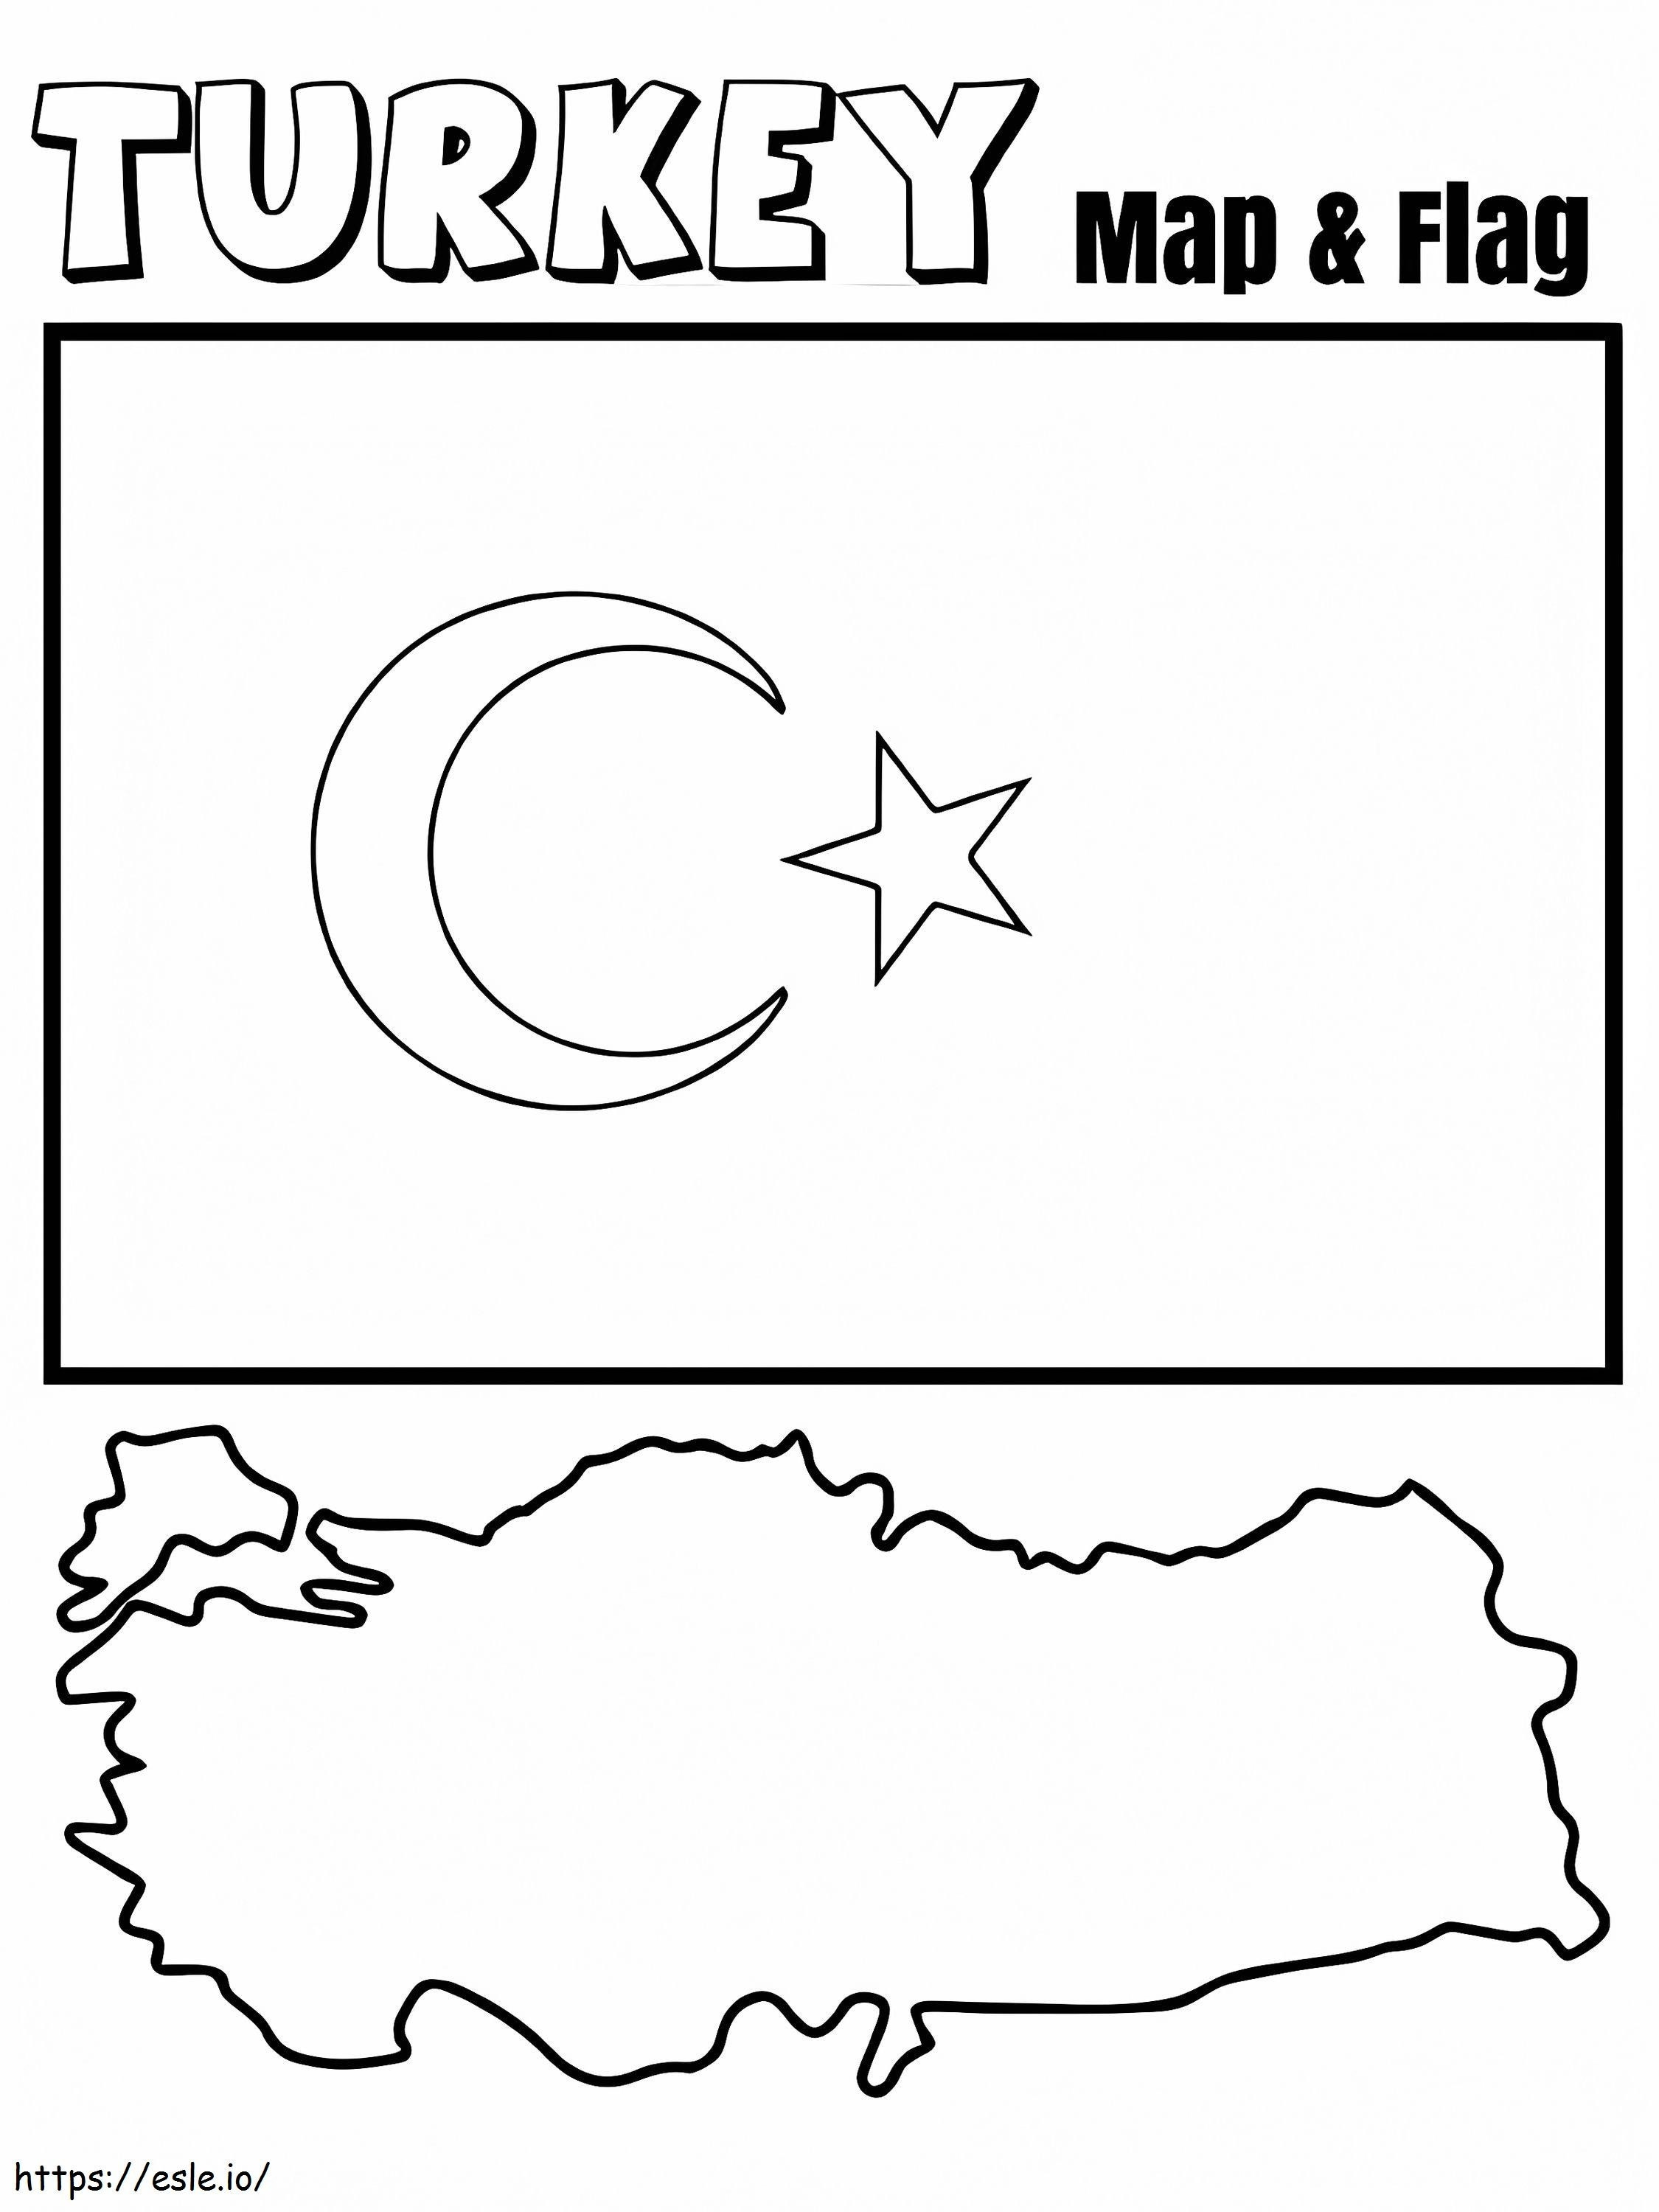 Türkei-Karte und Flagge ausmalbilder